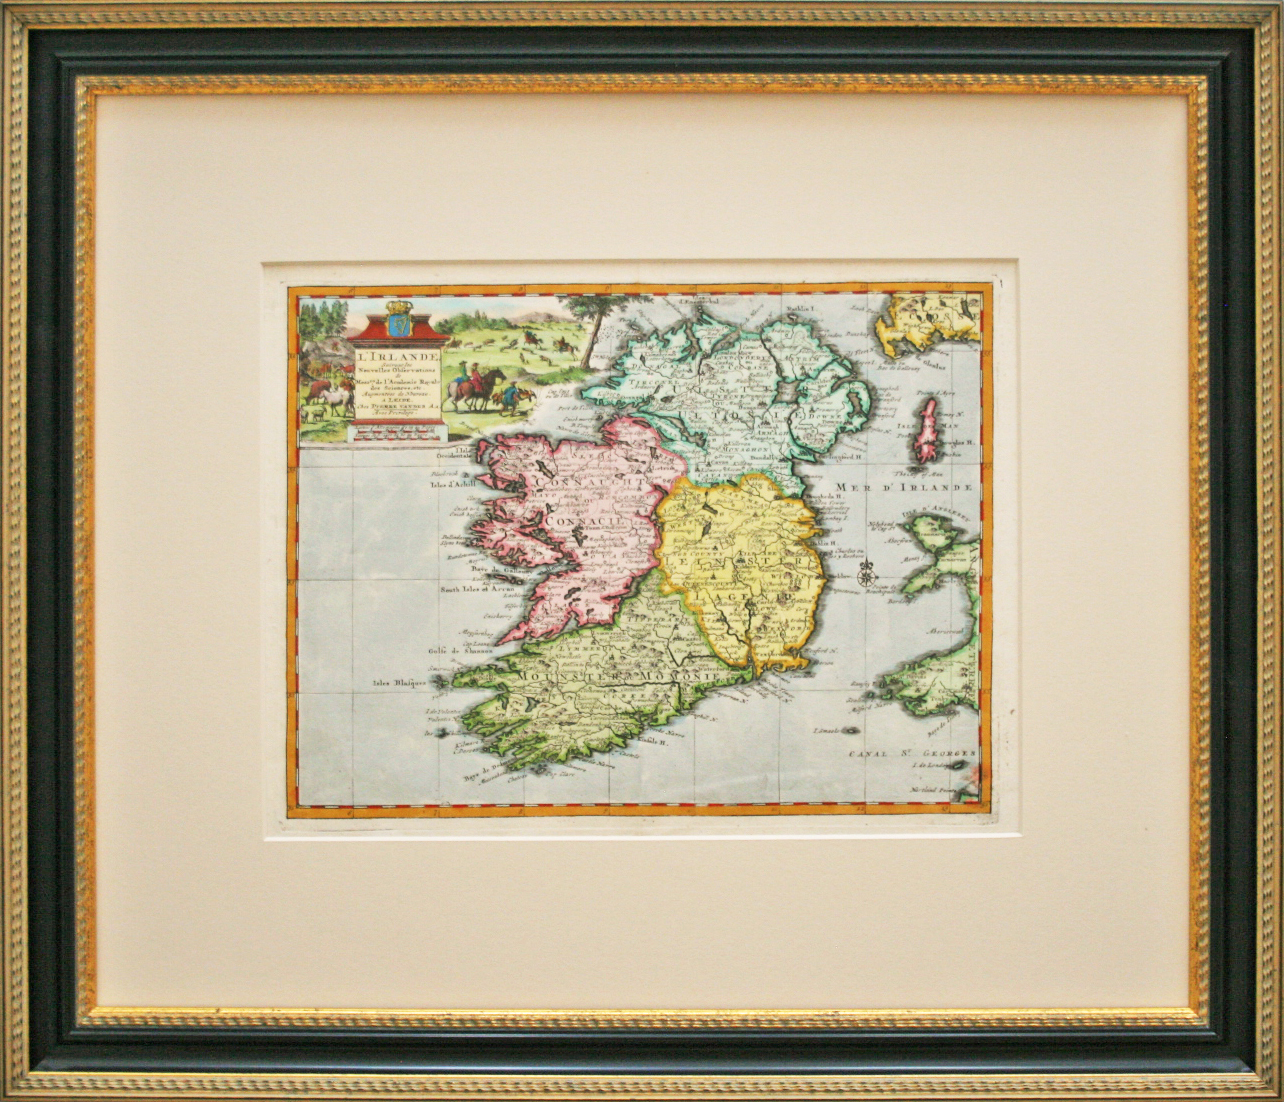 L'Irlande, Suivant les Nouvelles Observations 1729